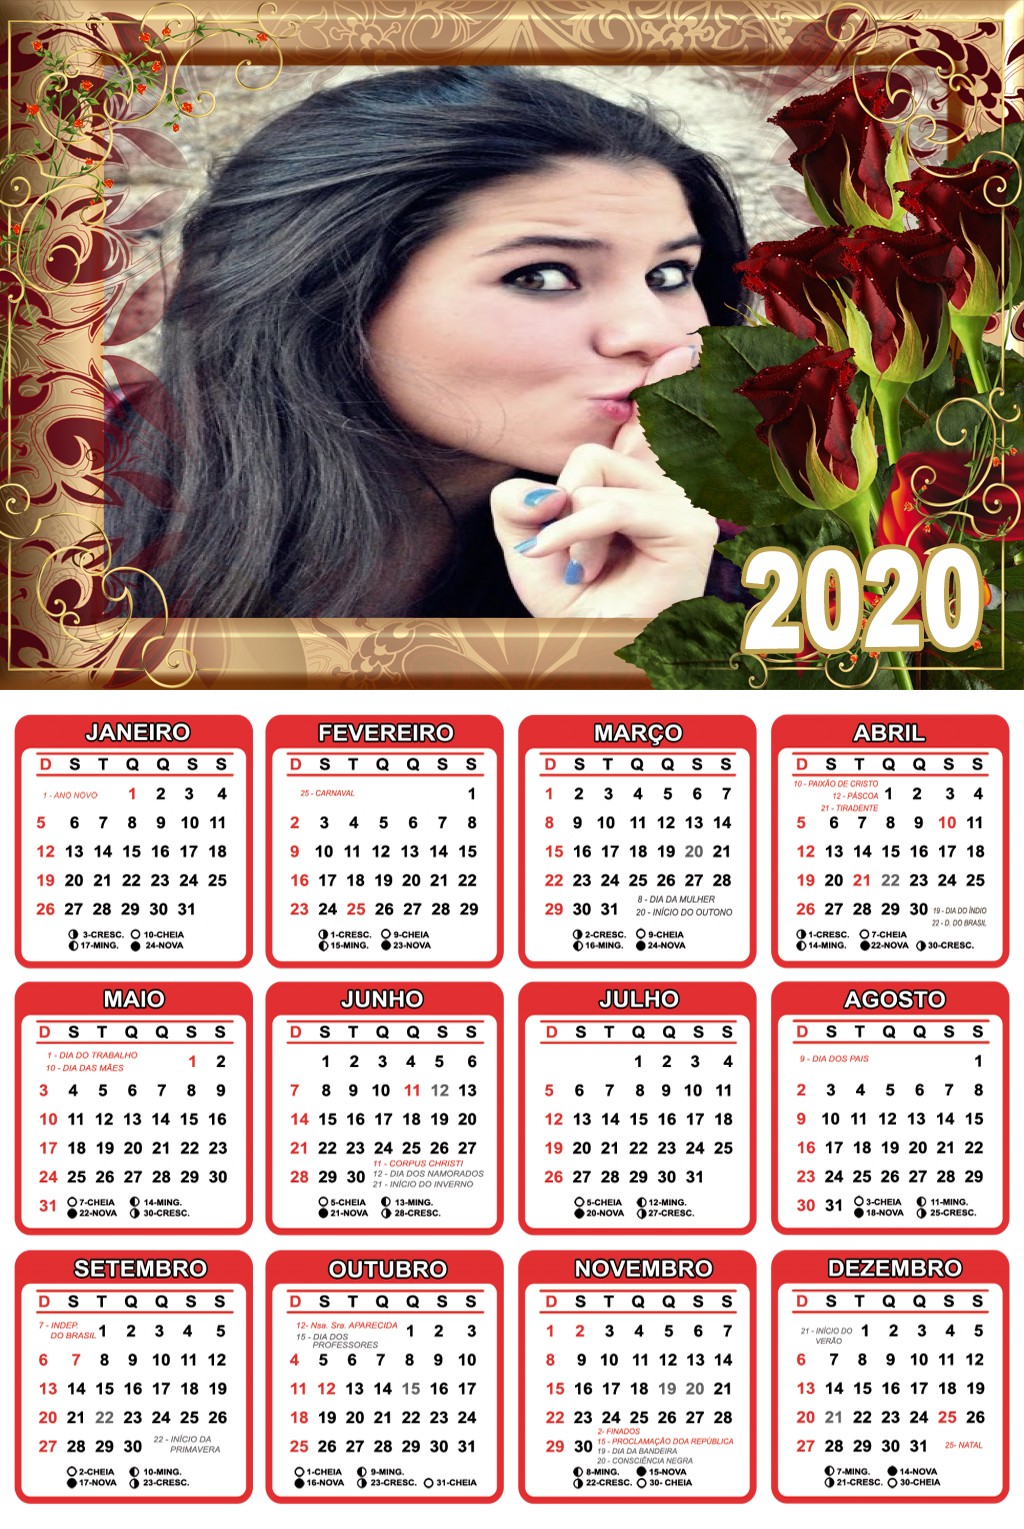 calendario-digital-com-foto-2020-rosas-vermelhas